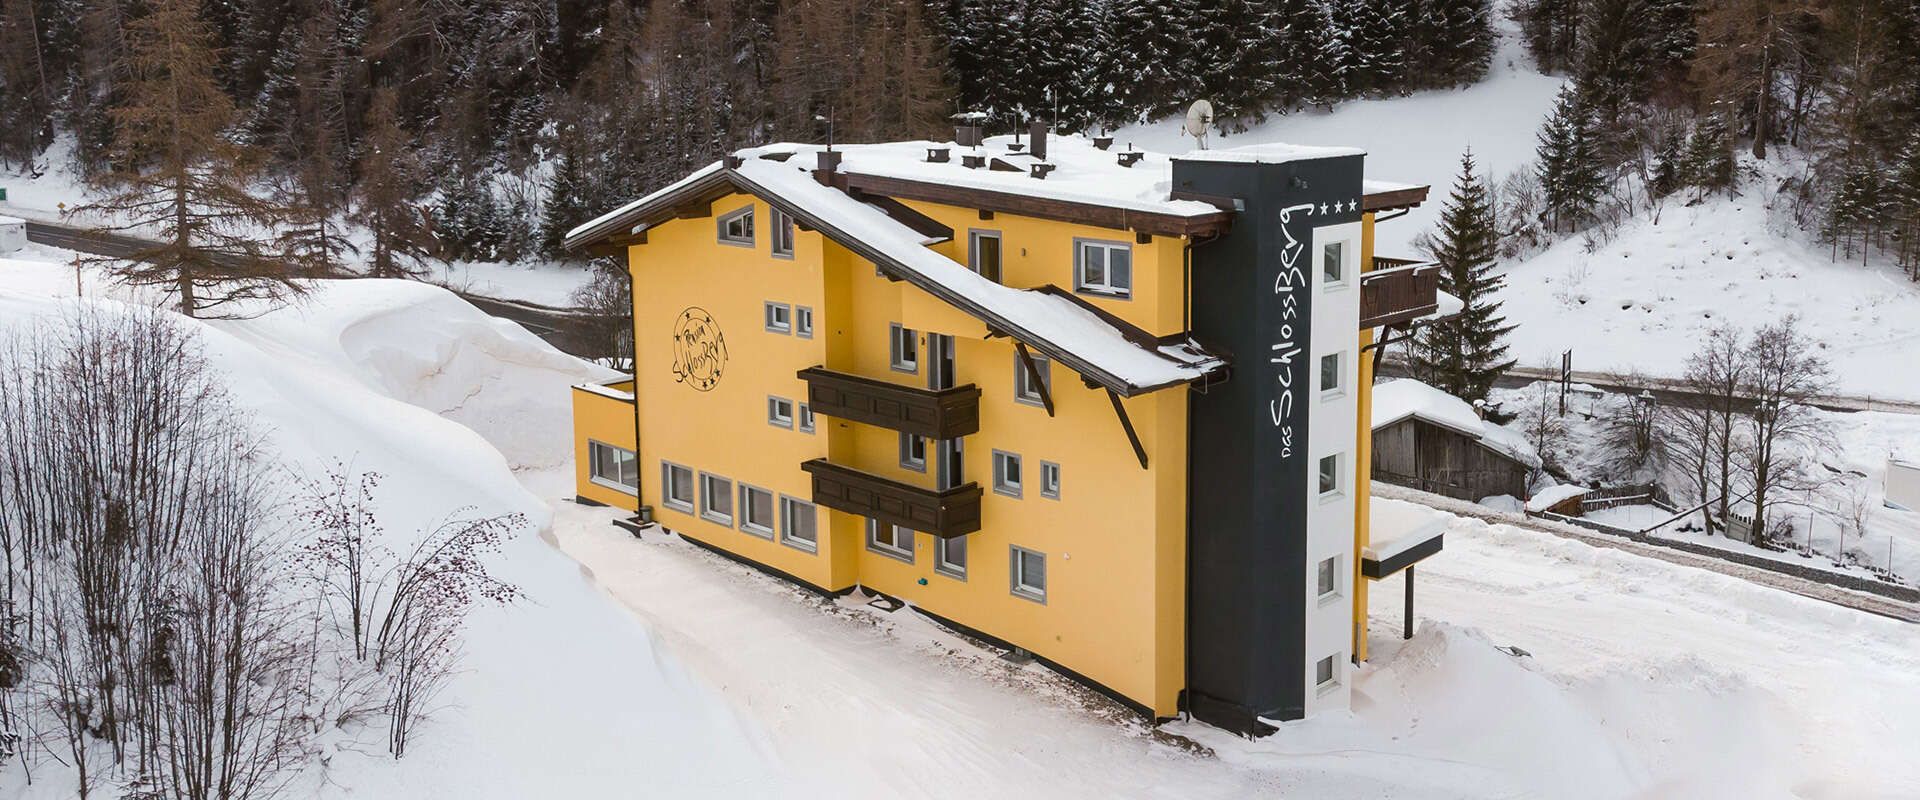 Hotel Das Schlossberg in Tirol im Winter